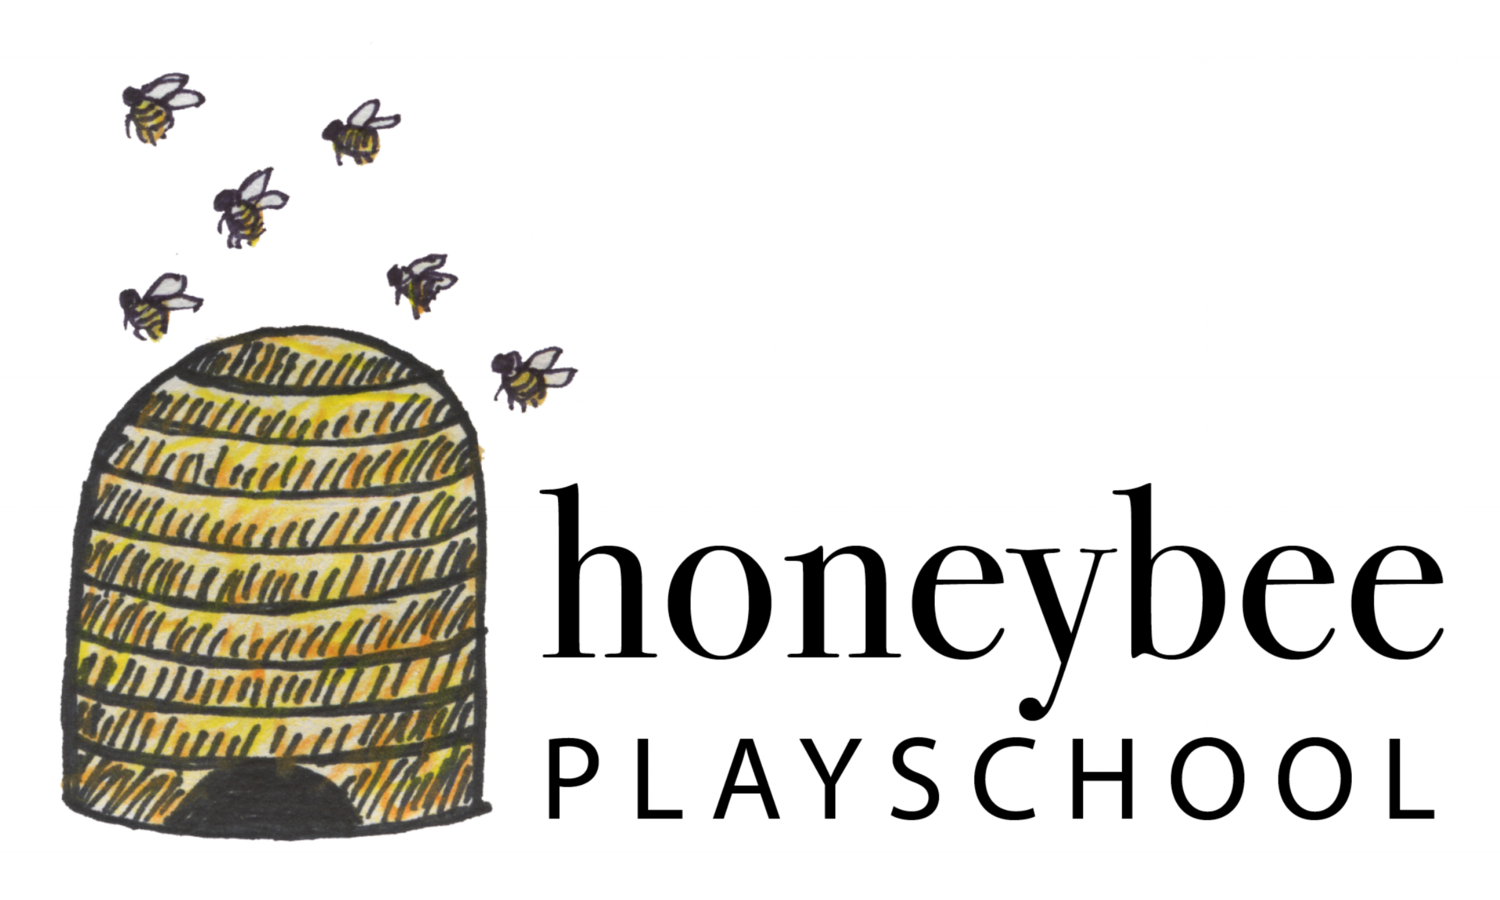 Honeybee Playschool